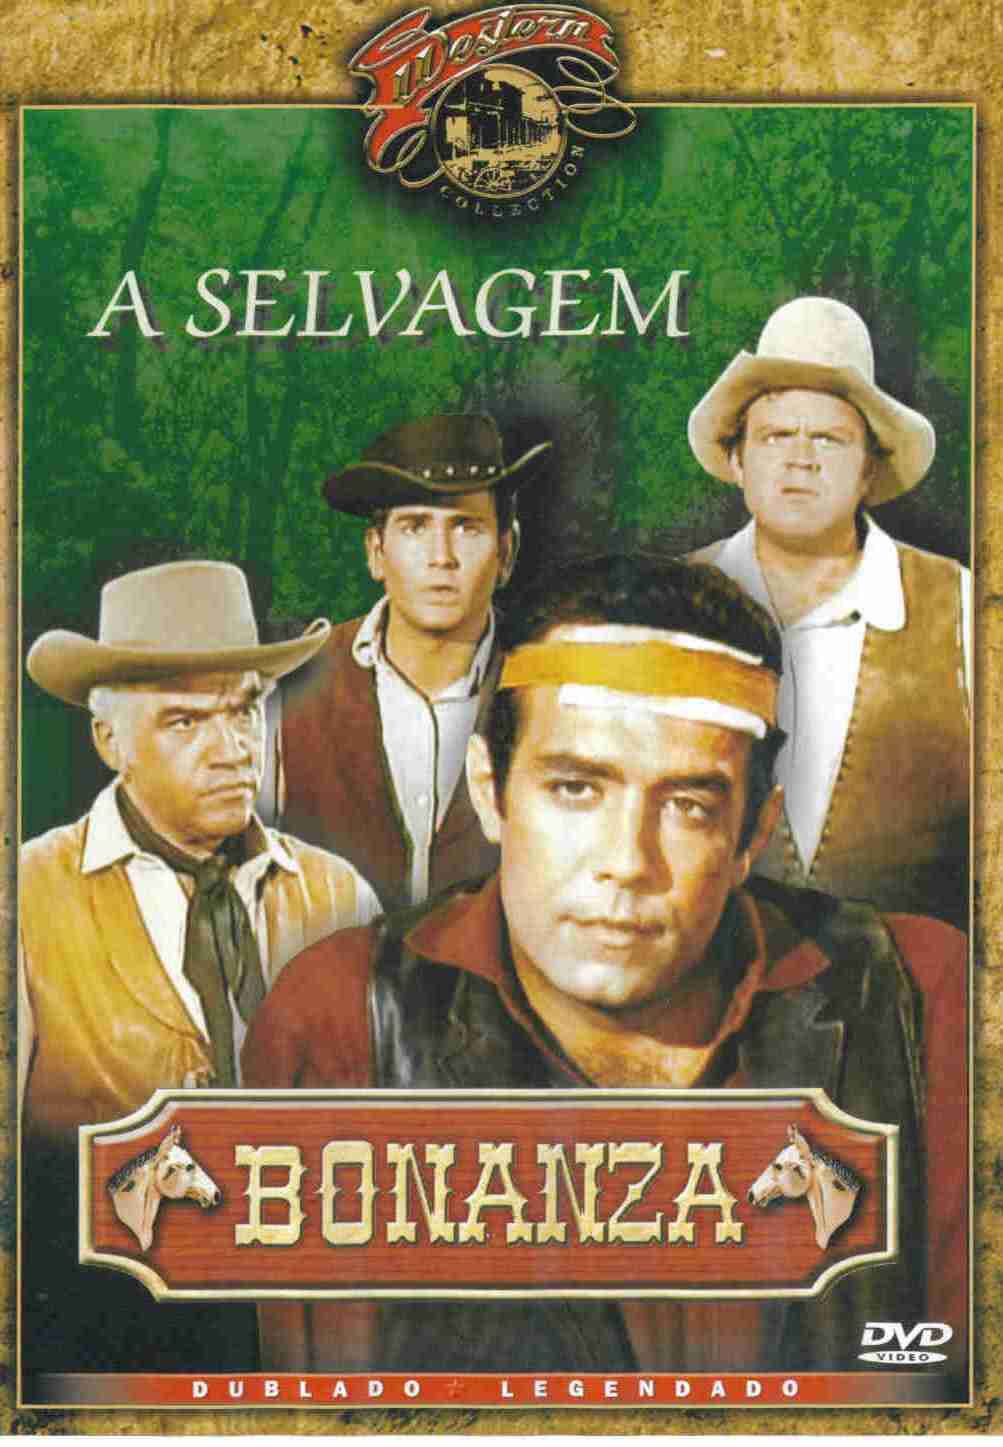 BONANZA - A SELVAGEM